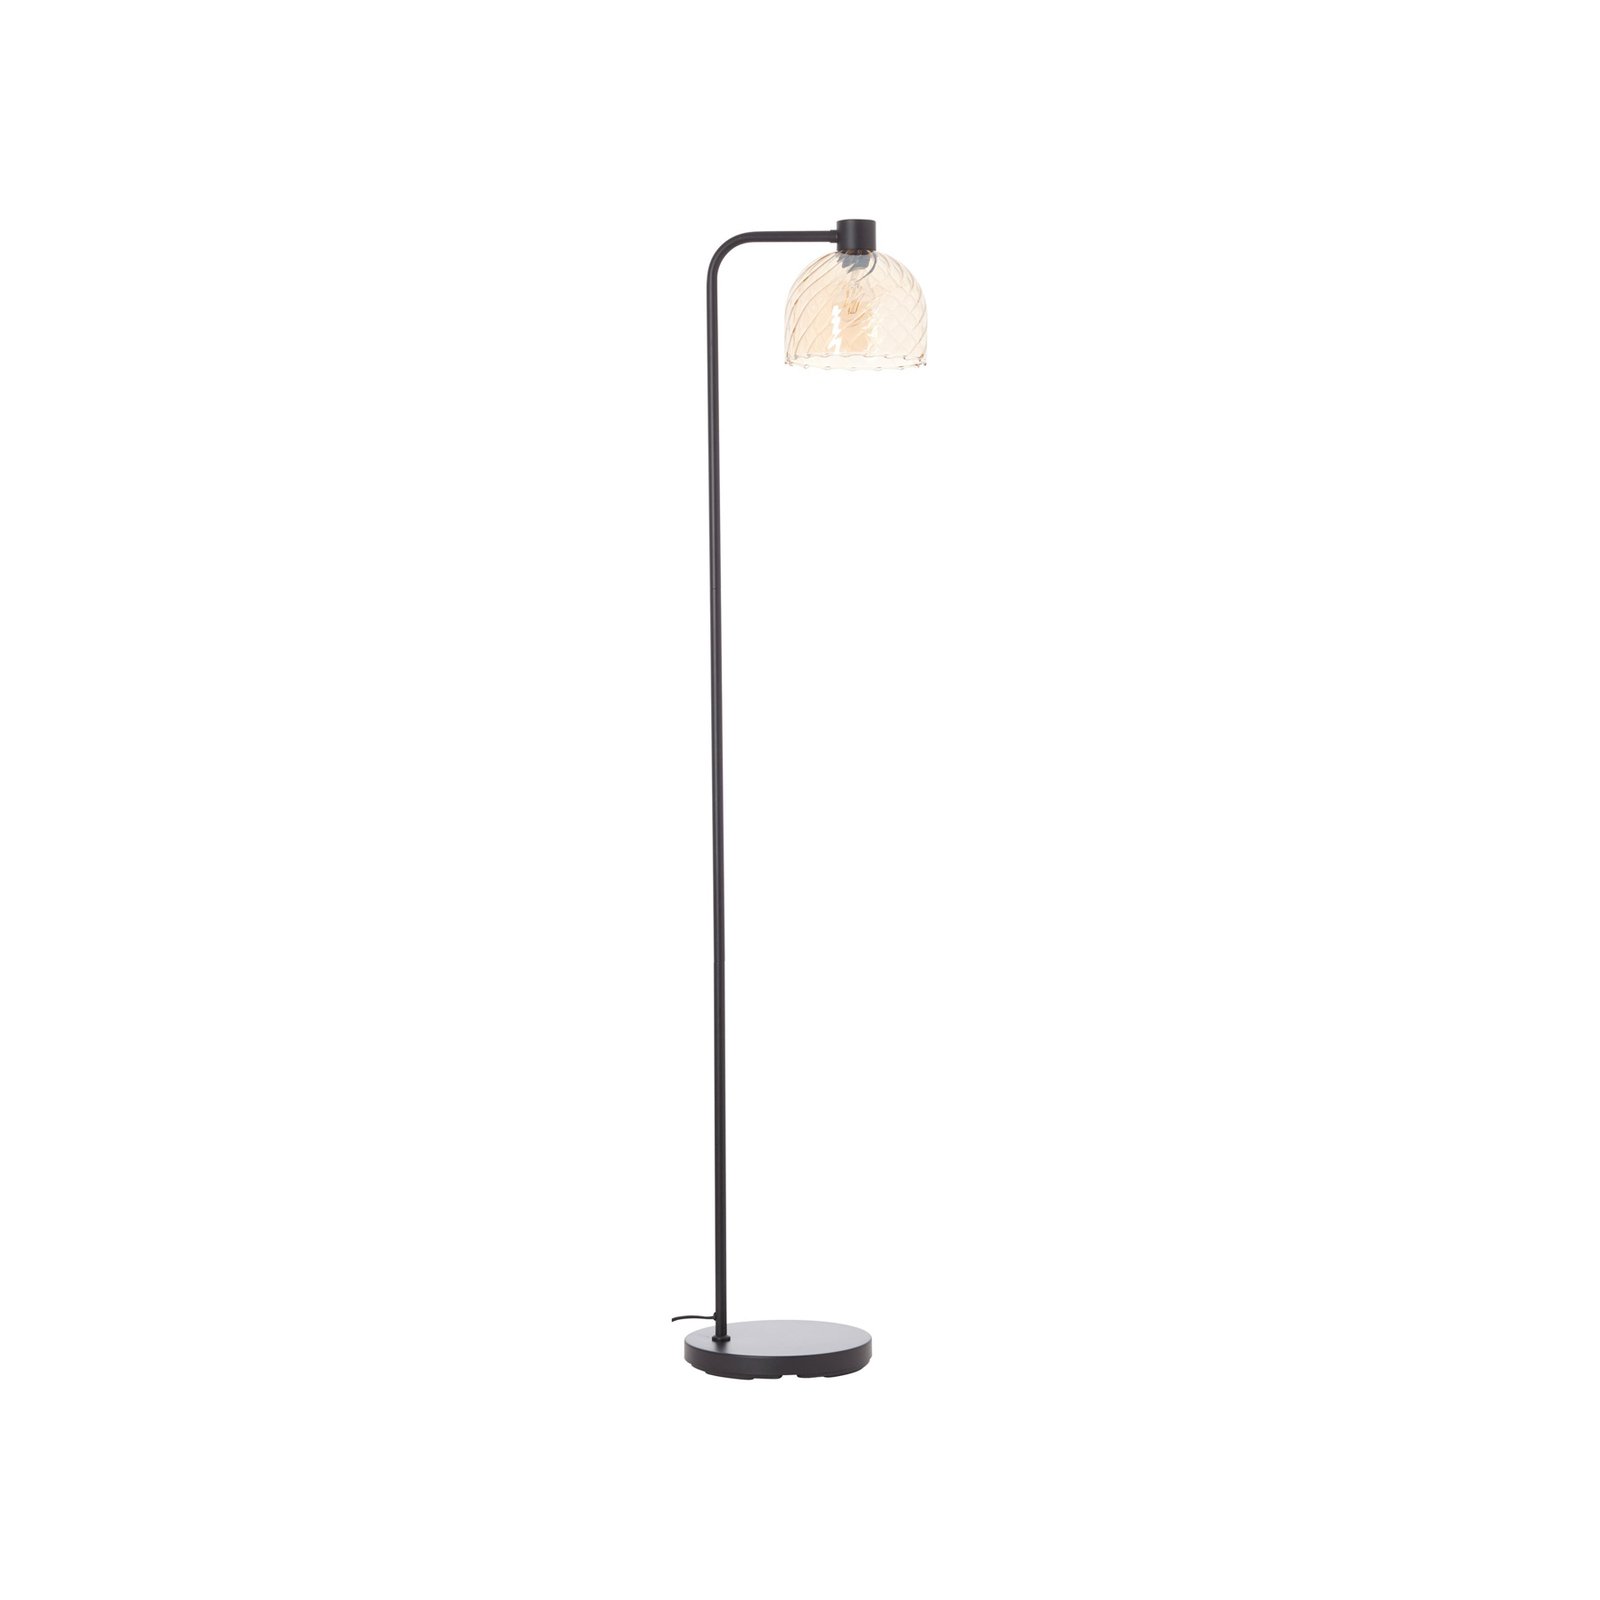 Casto gulvlampe, høyde 150 cm, rav, glass/metall